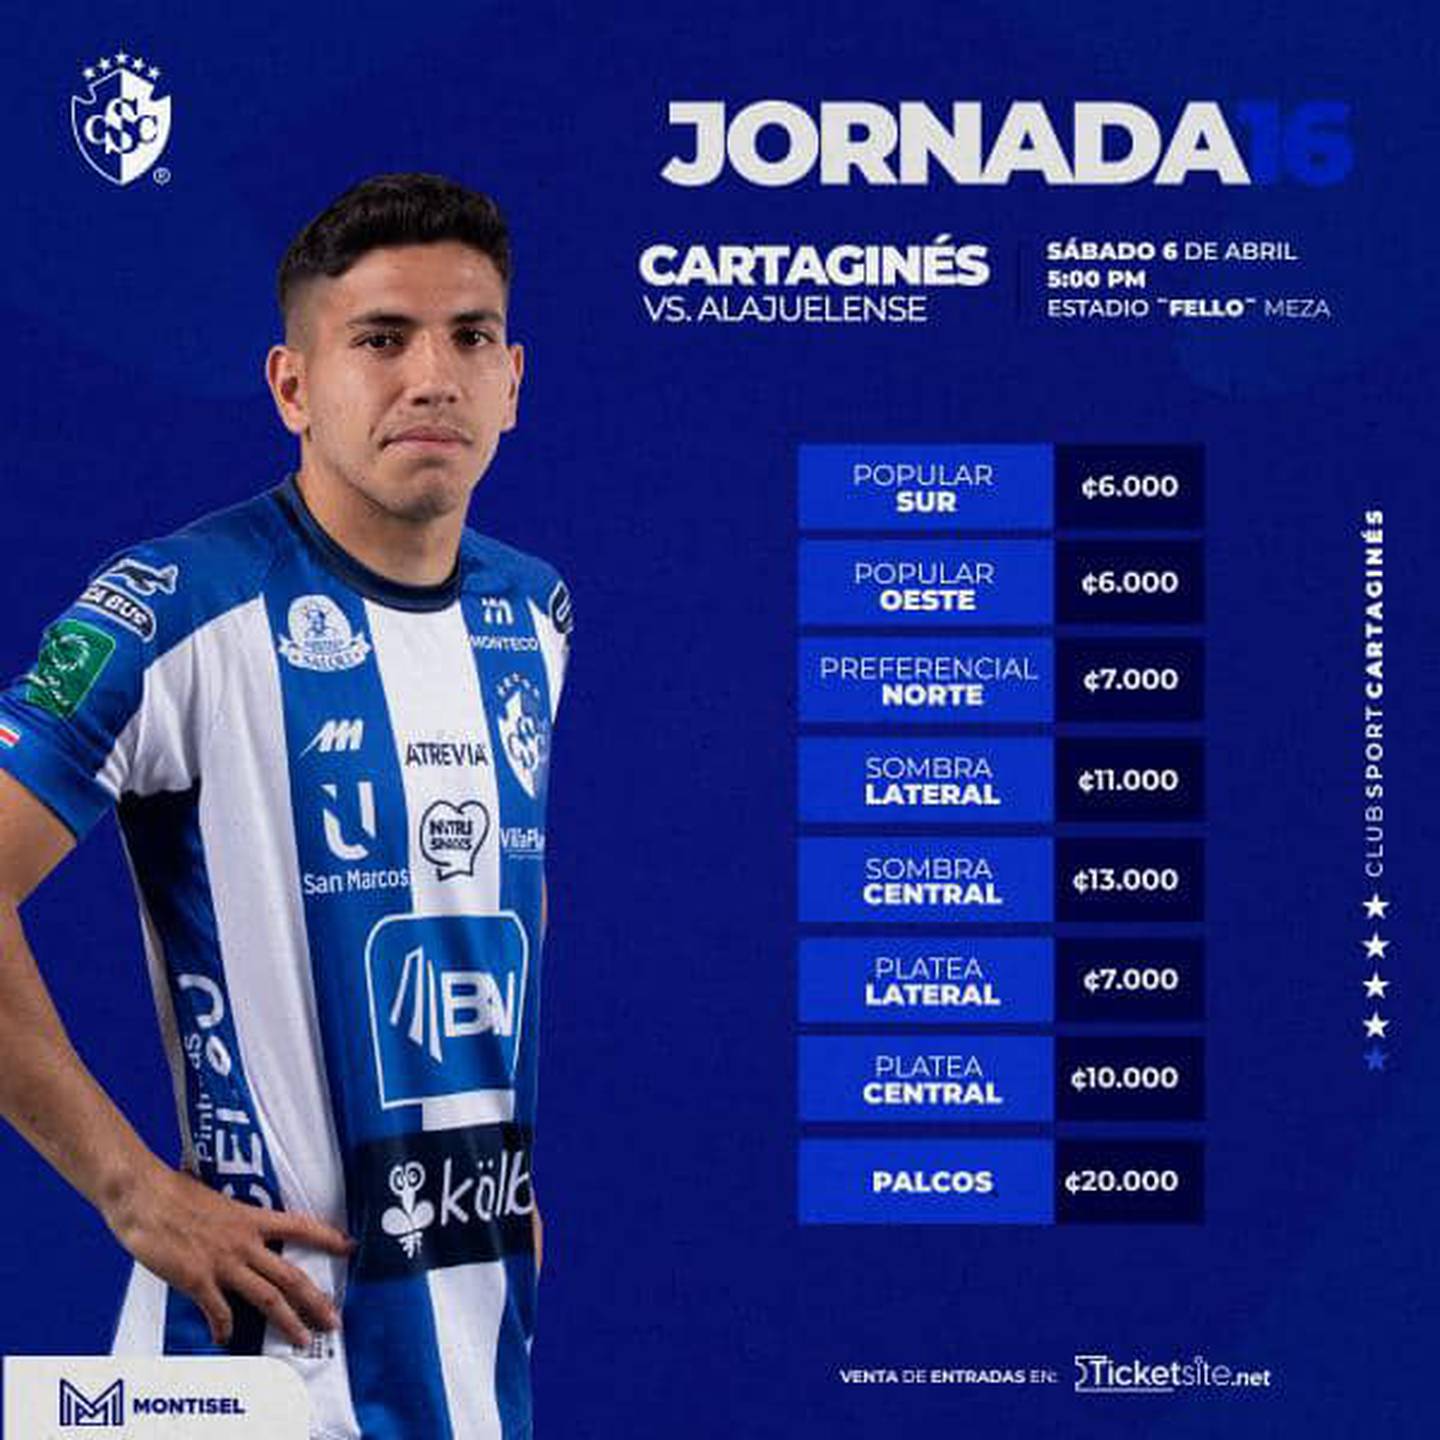 Estos son los precios para el partido entre Cartaginés y Liga Deportiva Alajuelense. El juego es este 6 de abril en el Estadio José Rafael 'Fello' Meza.